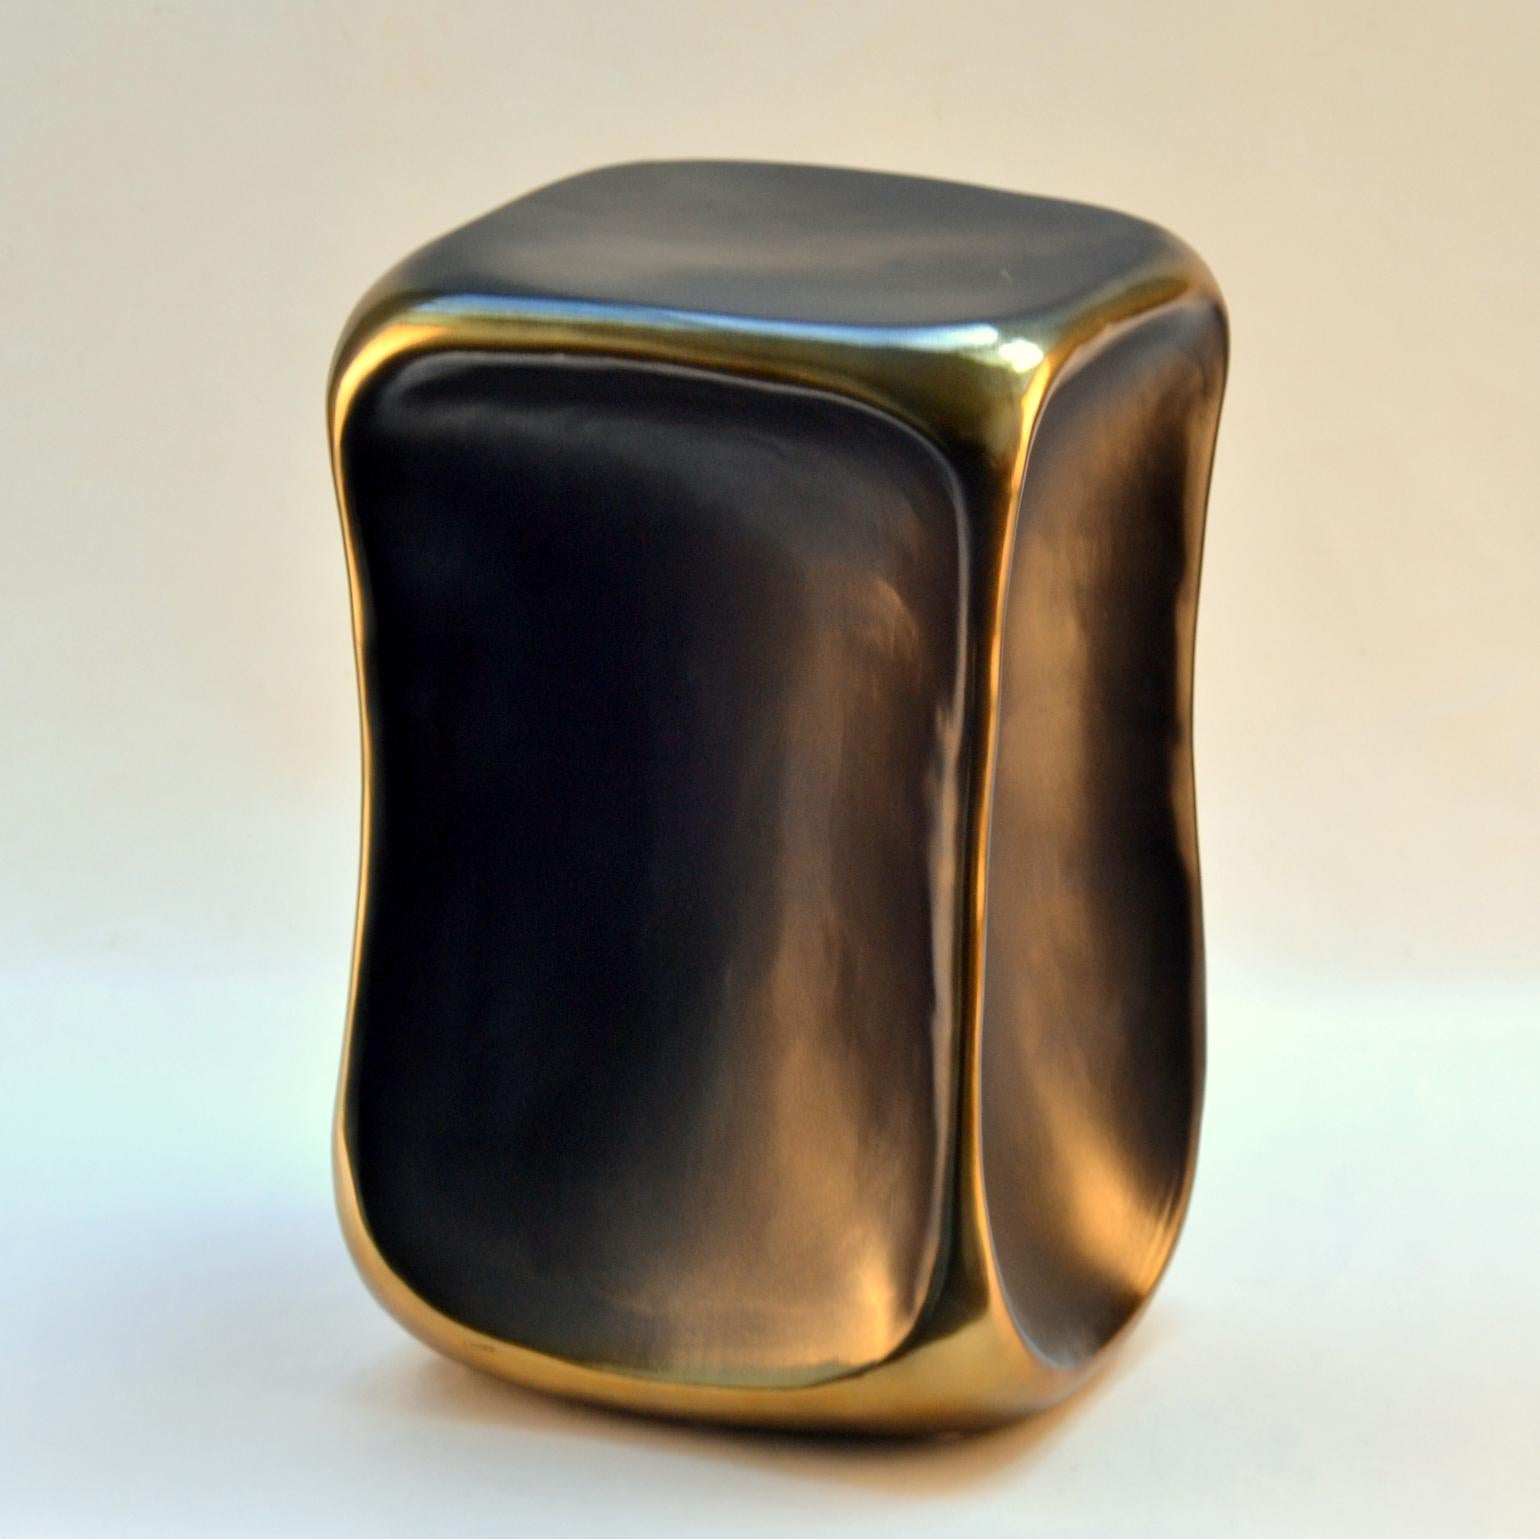 Schwarz-goldener rechteckiger Beistelltisch mit quadratischer Platte und abgerundeten Ecken und akzentuierten goldenen Rippen, aus Keramik gegossen.